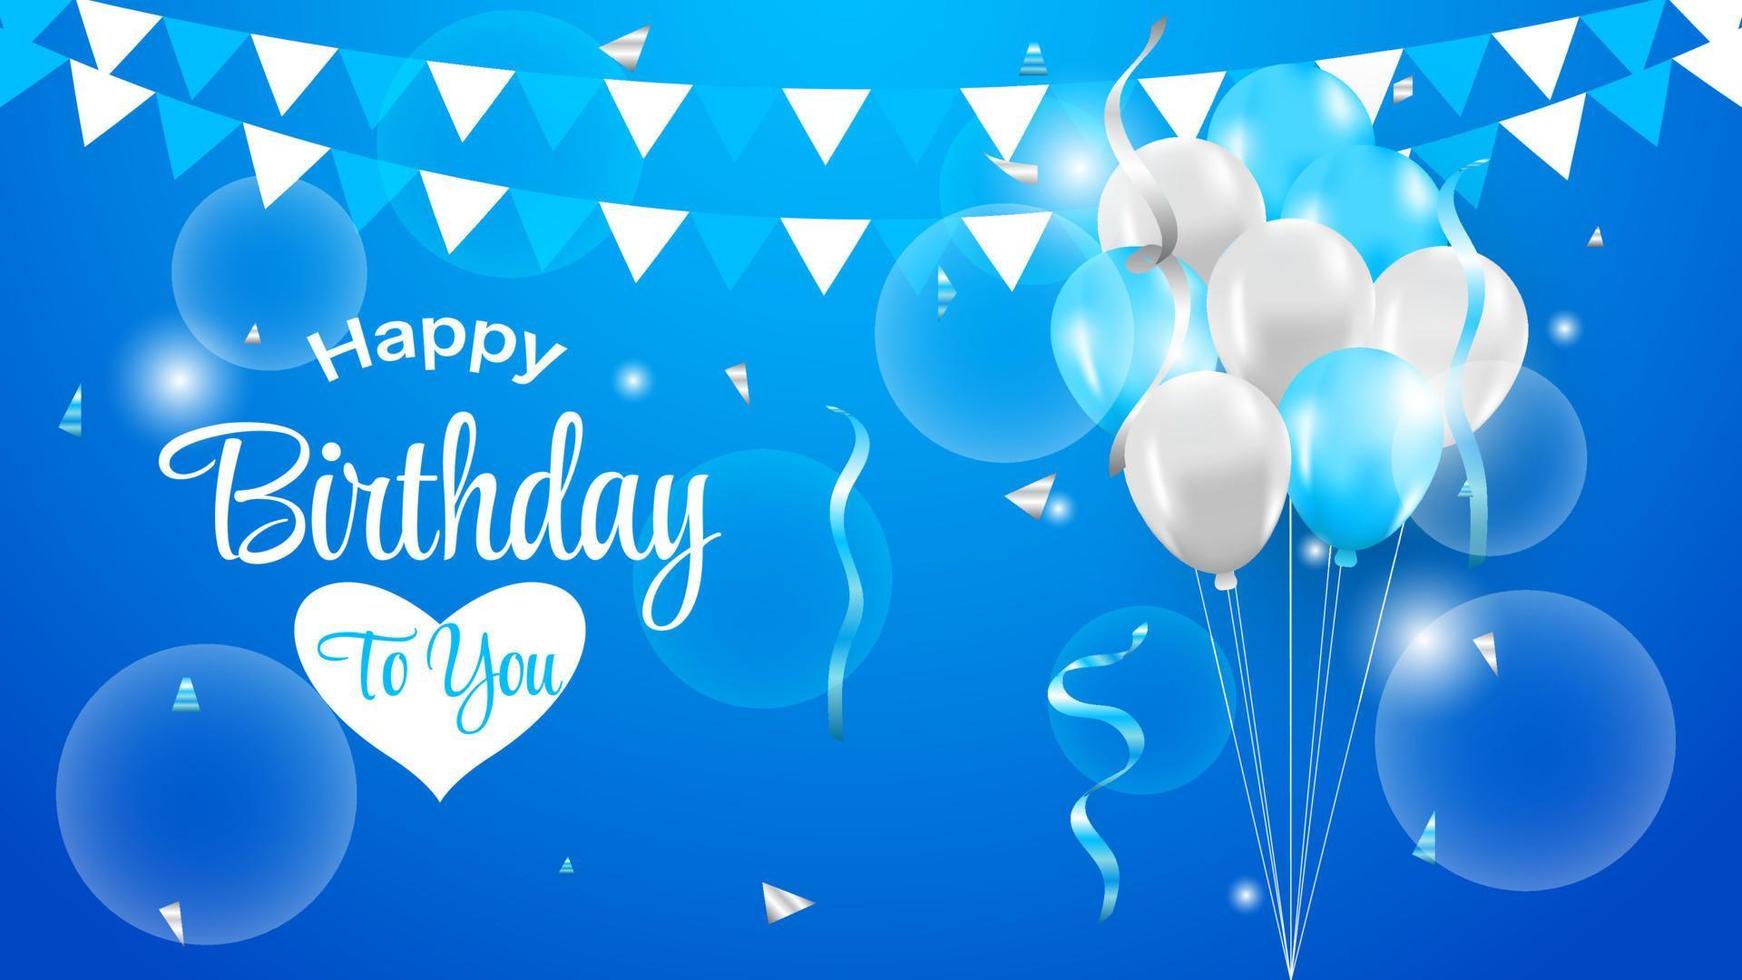 Premium Vector  Happy birthday background with ballon and confetti